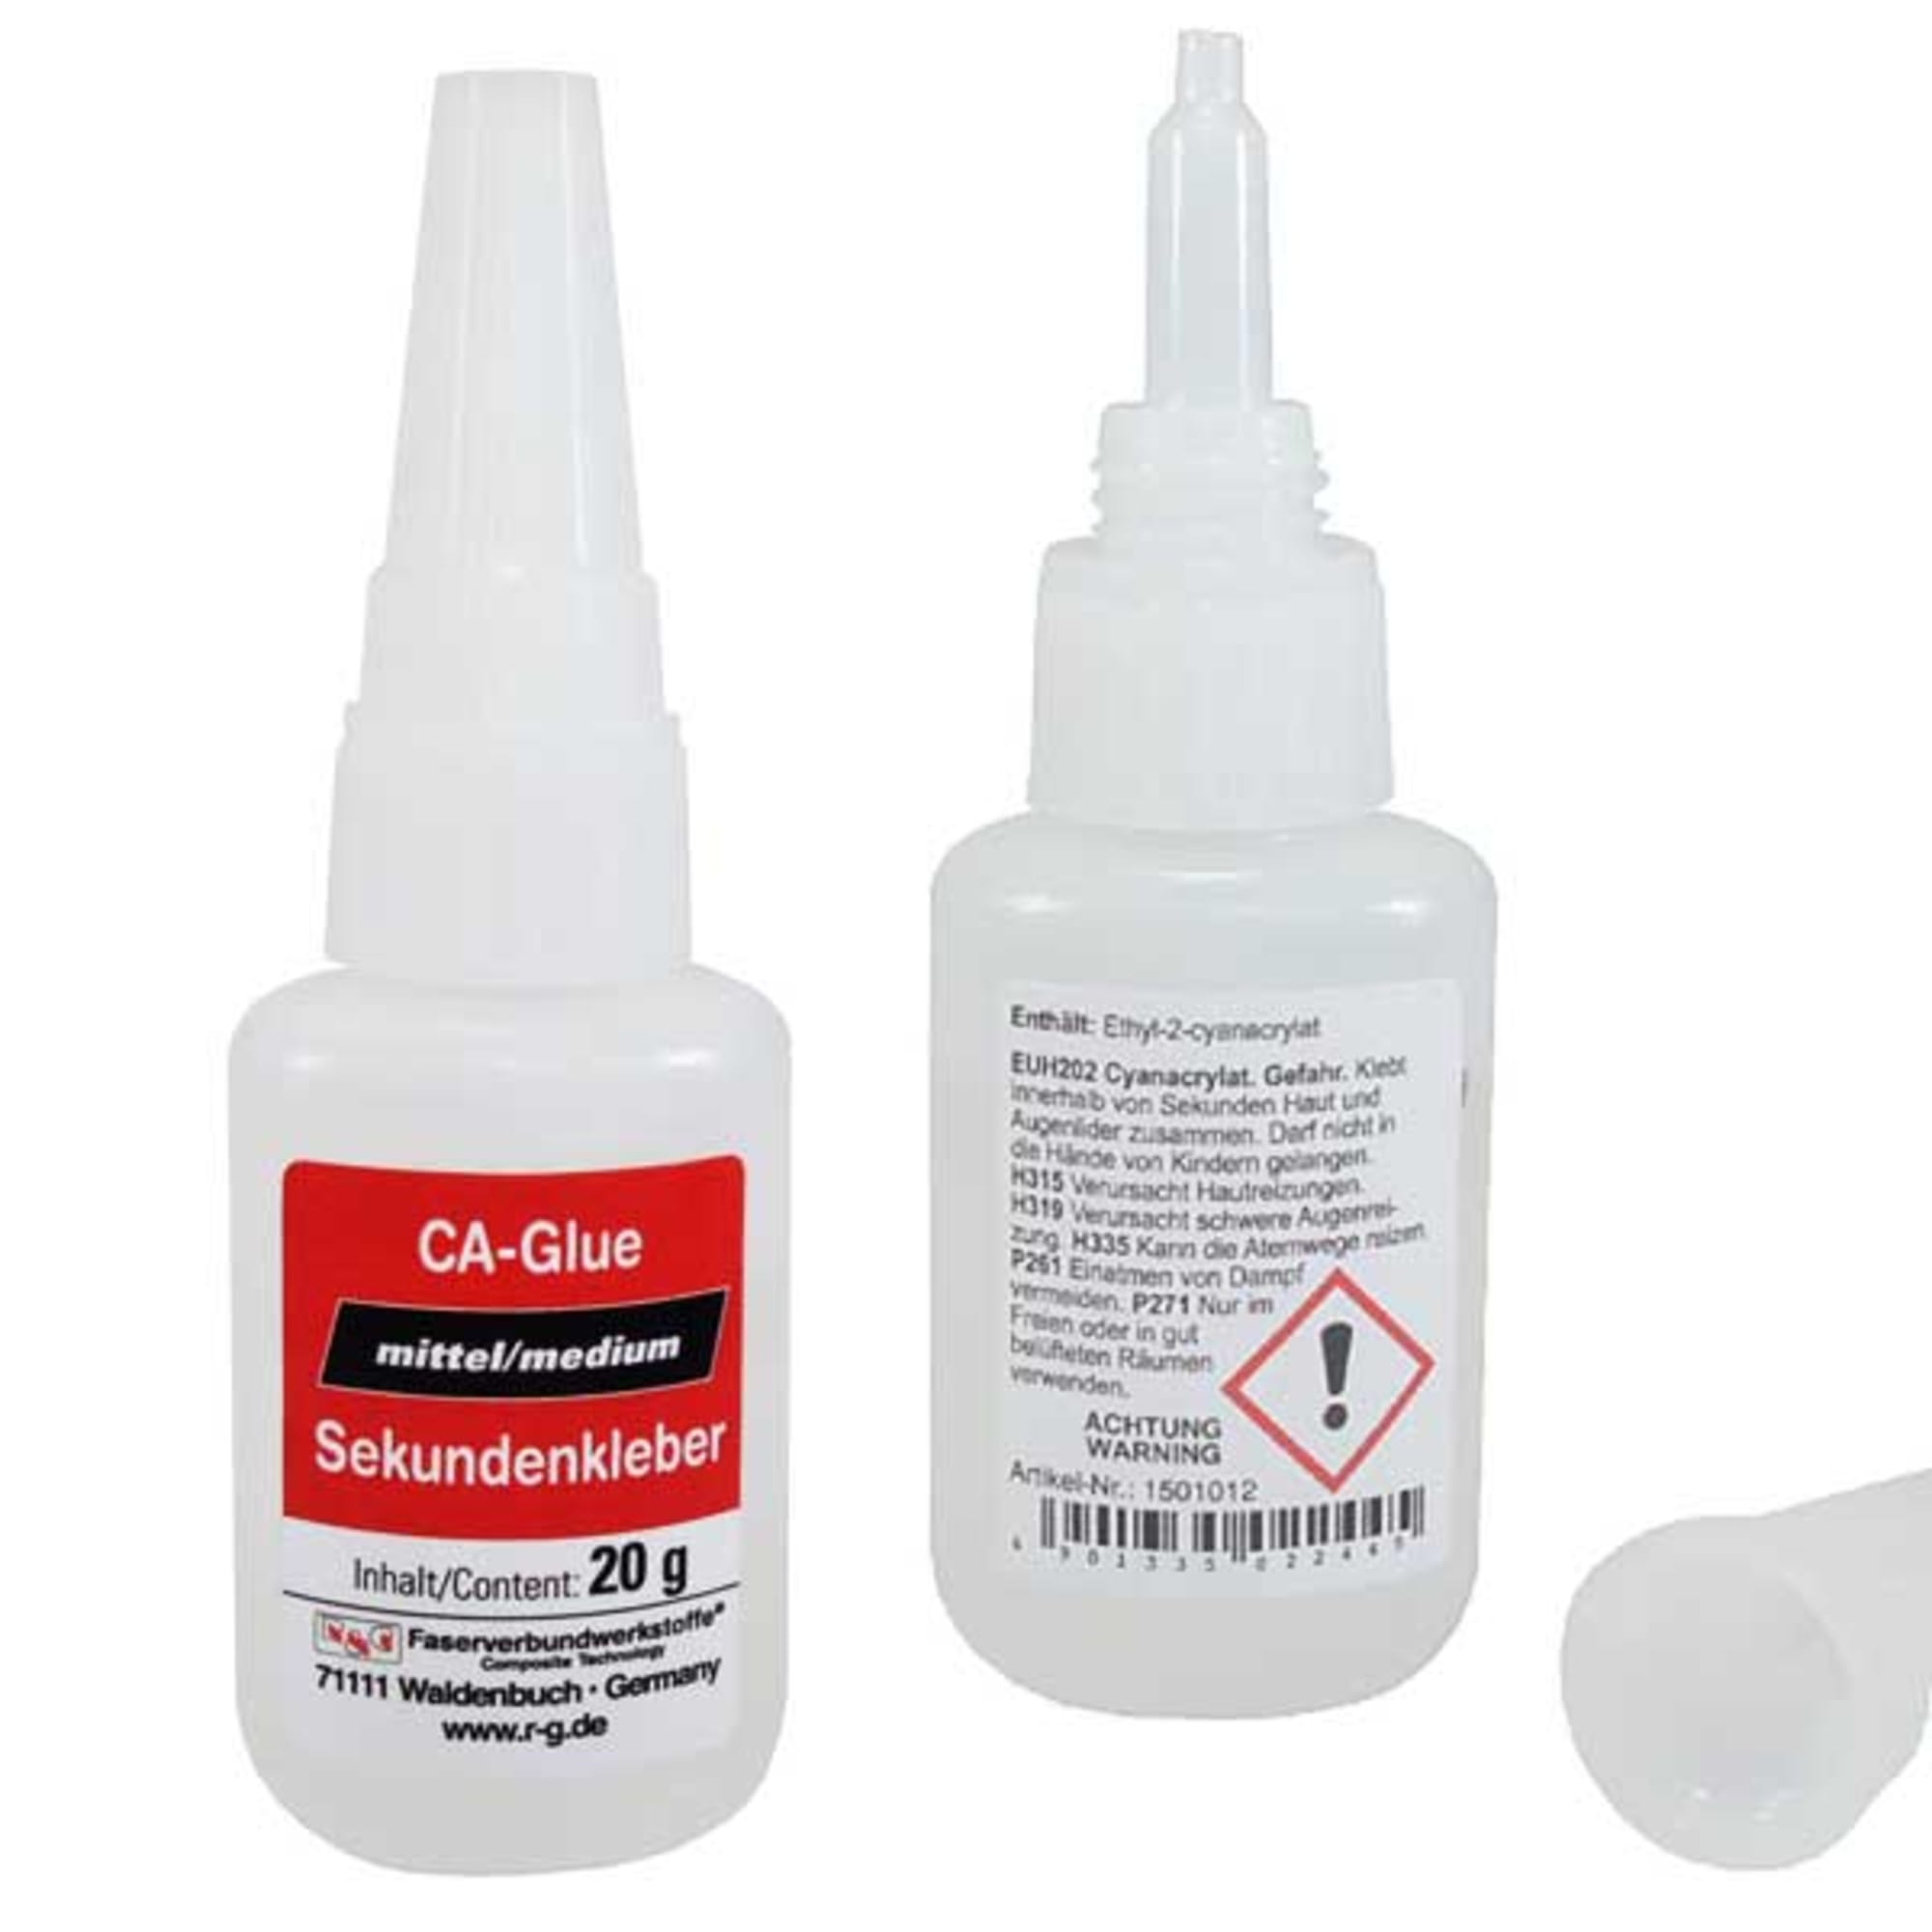 CA Glue (medium), image 2